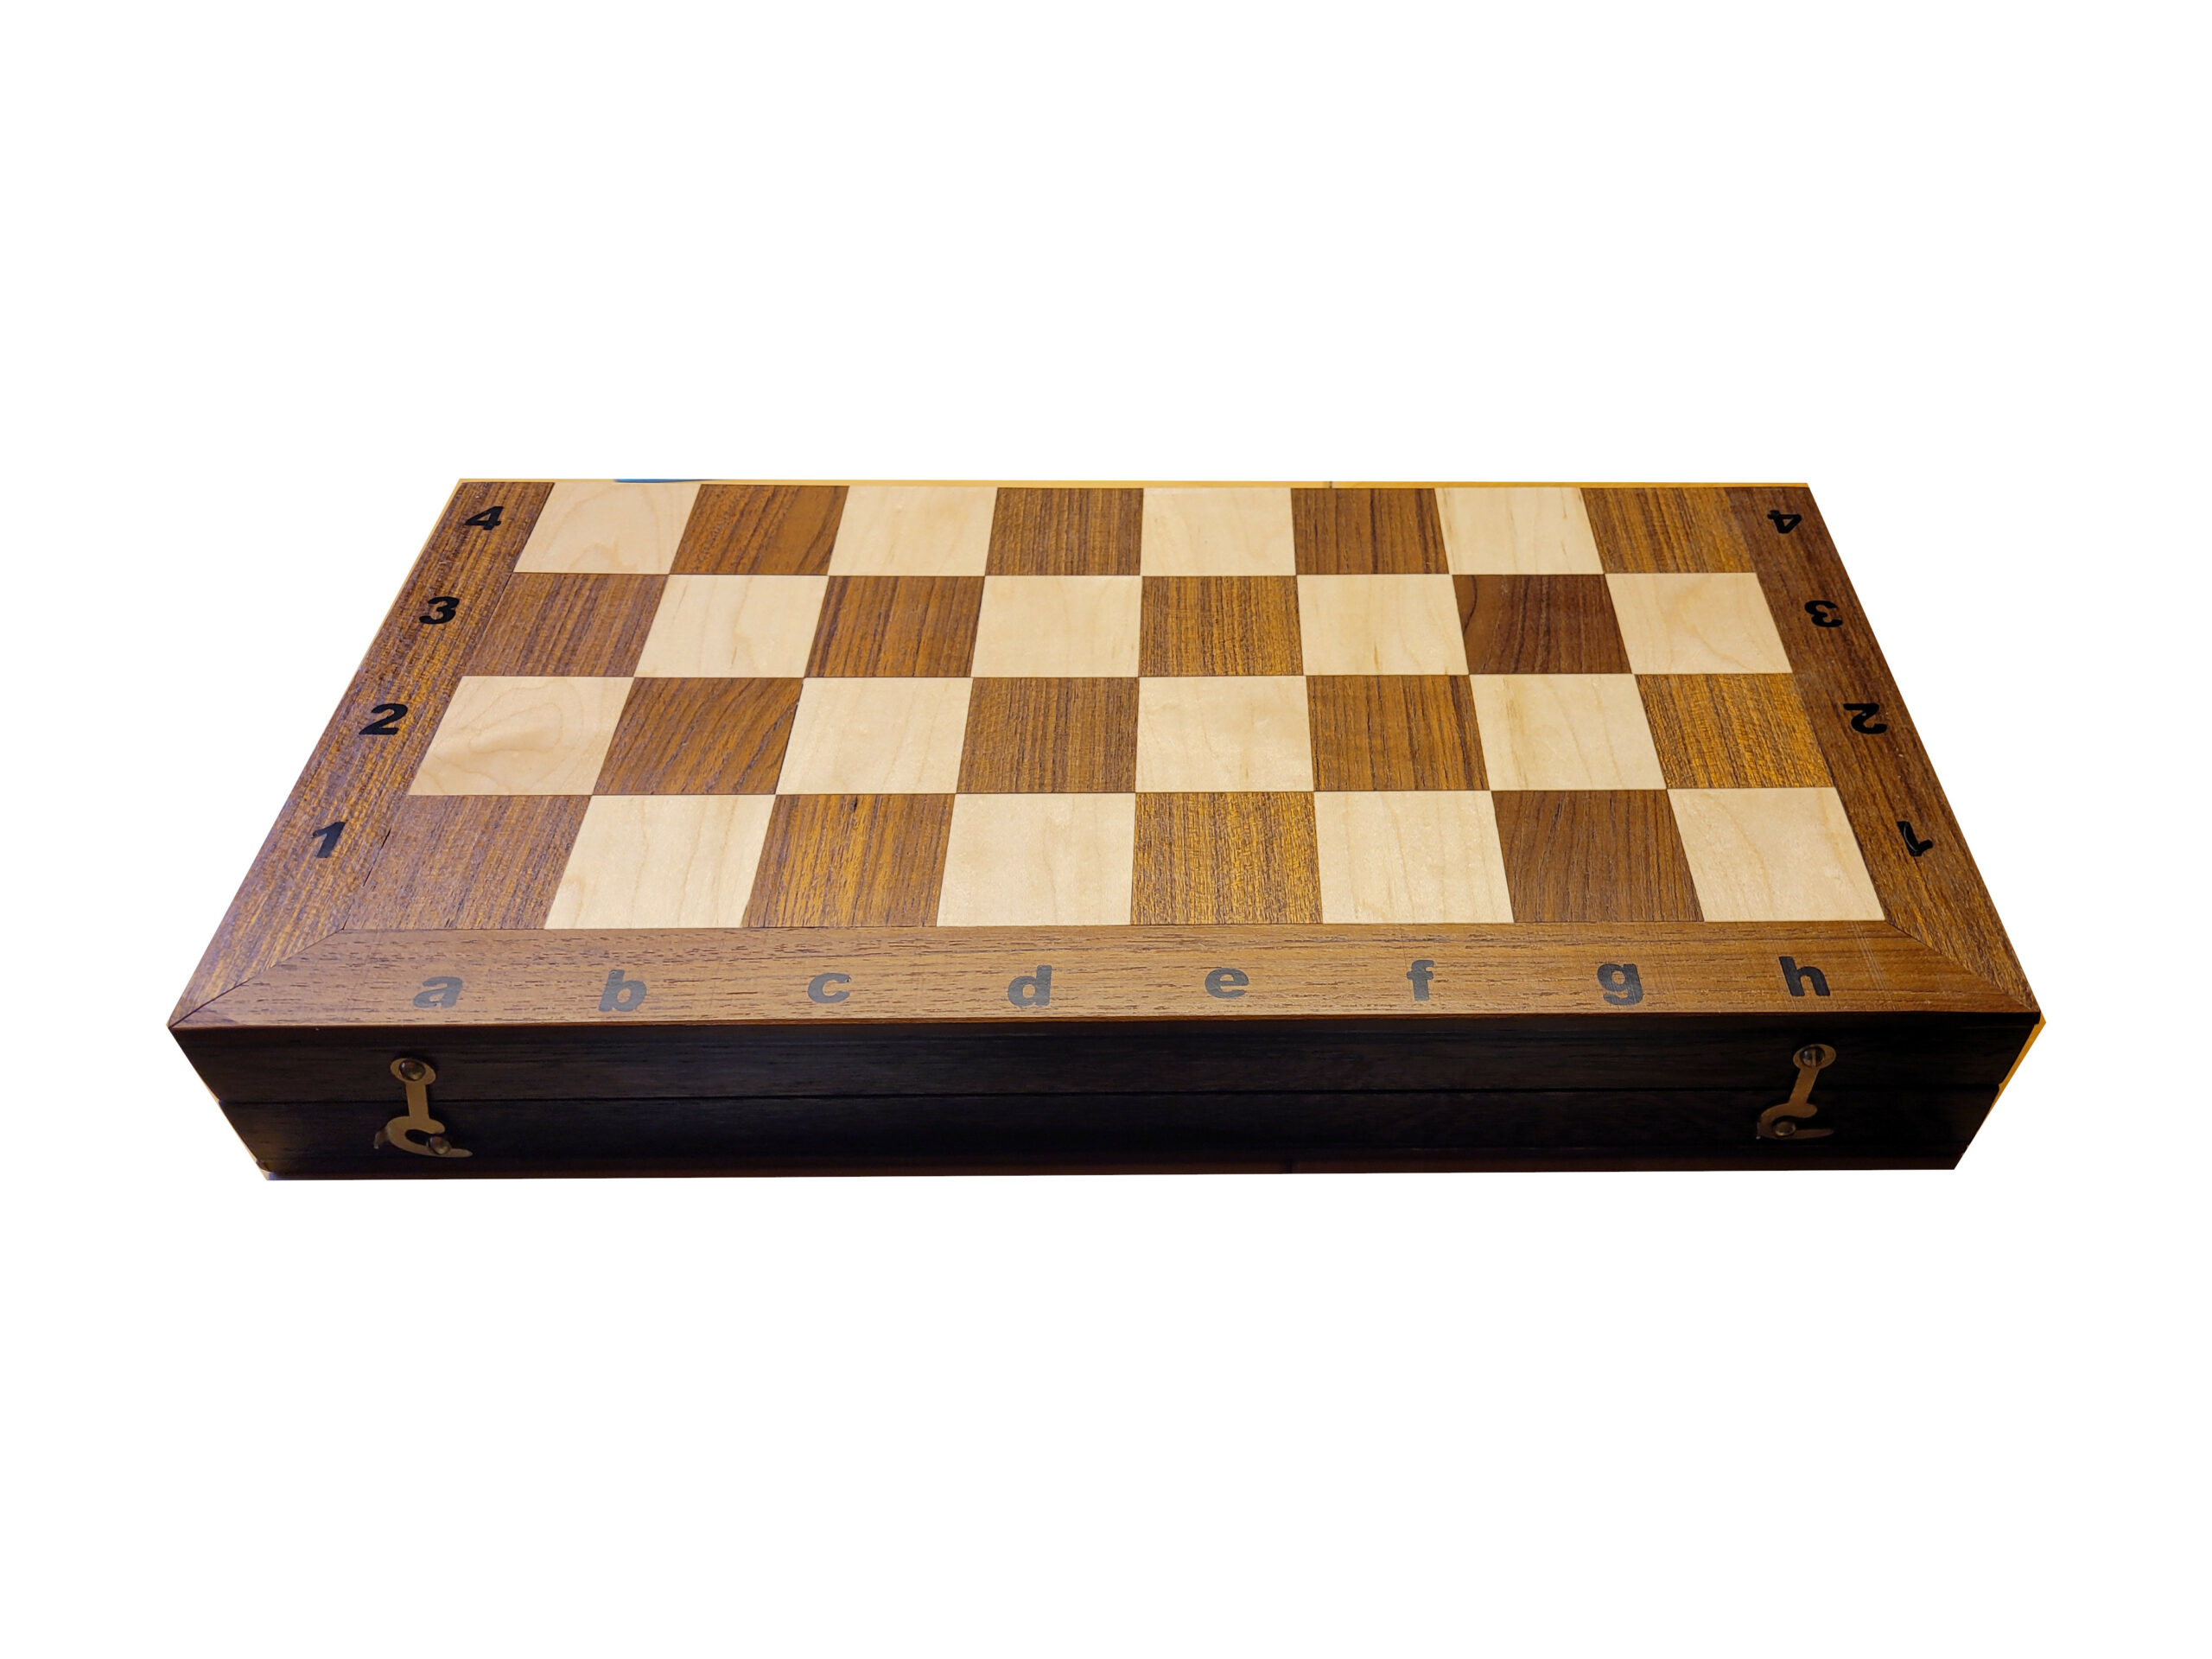 Schackspelets låda ihopfälld